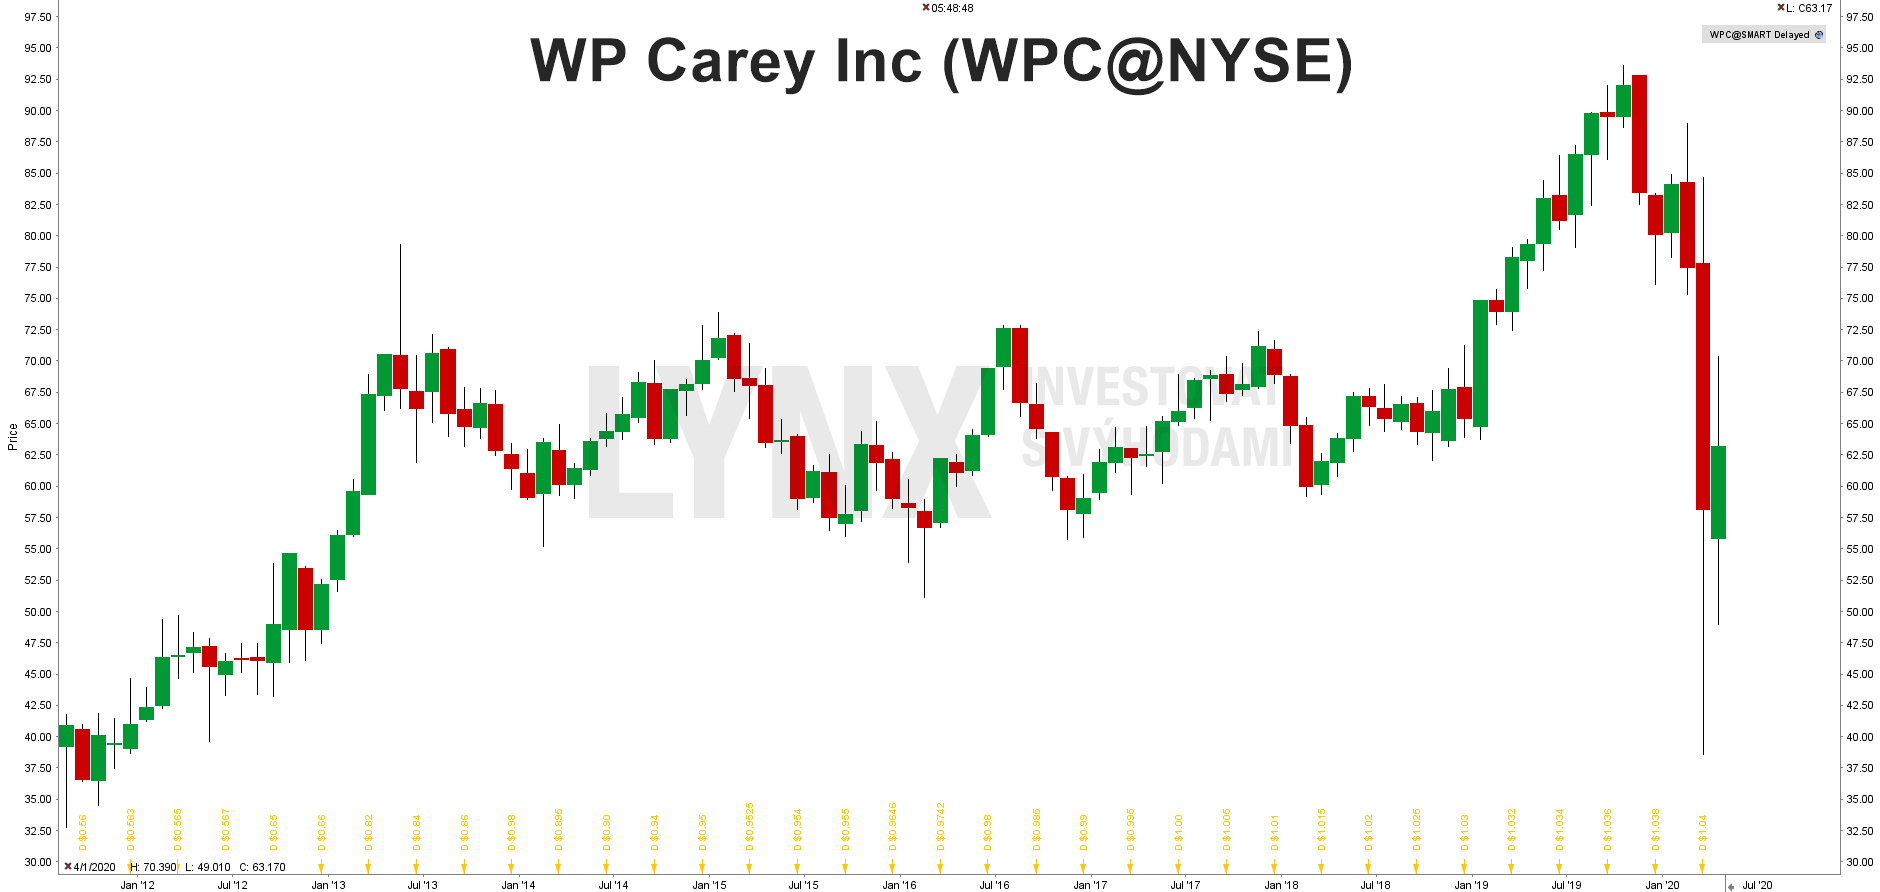 WP Carey Inc (WPC@NYSE)